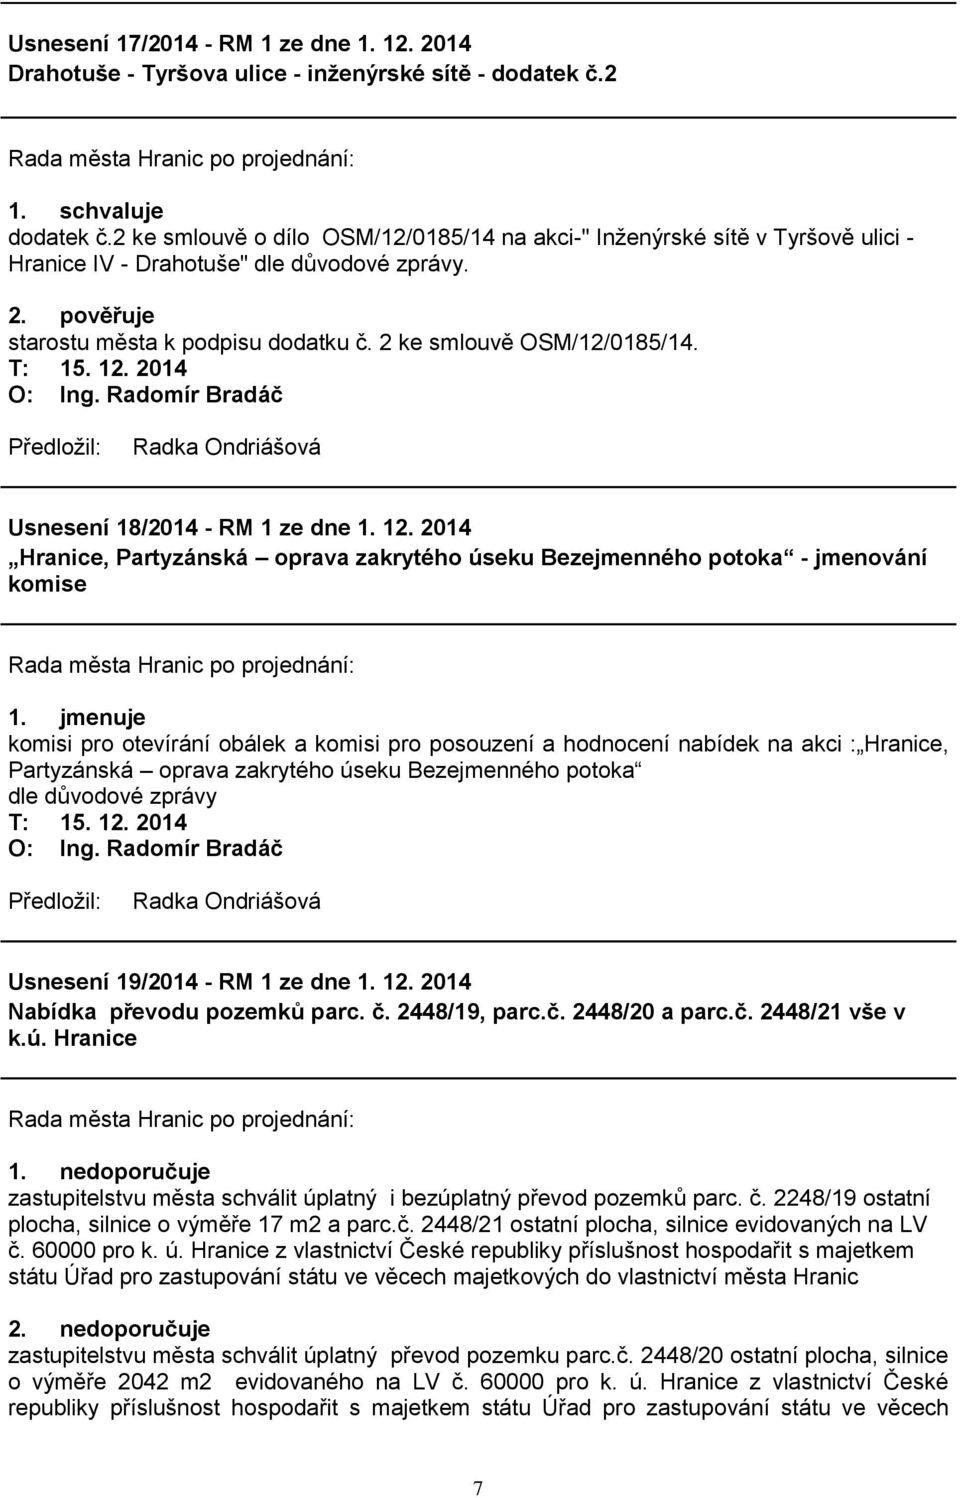 Usnesení 18/2014 - RM 1 ze dne 1. 12. 2014 Hranice, Partyzánská oprava zakrytého úseku Bezejmenného potoka - jmenování komise 1.